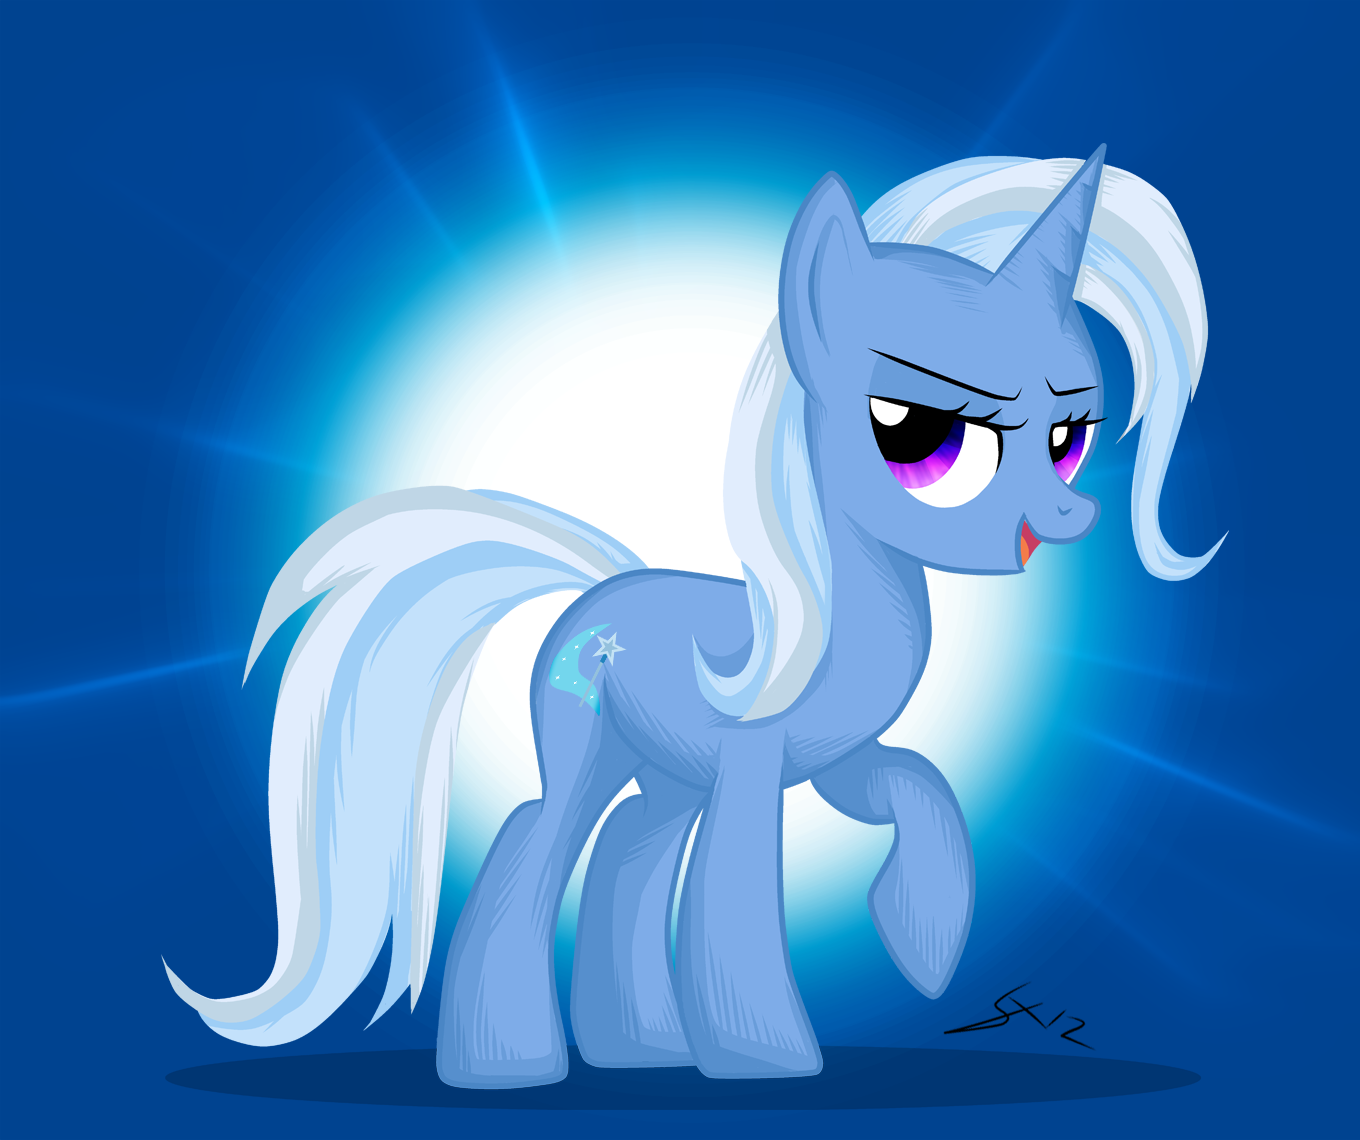 Trixie My Little Pony 1360x1140